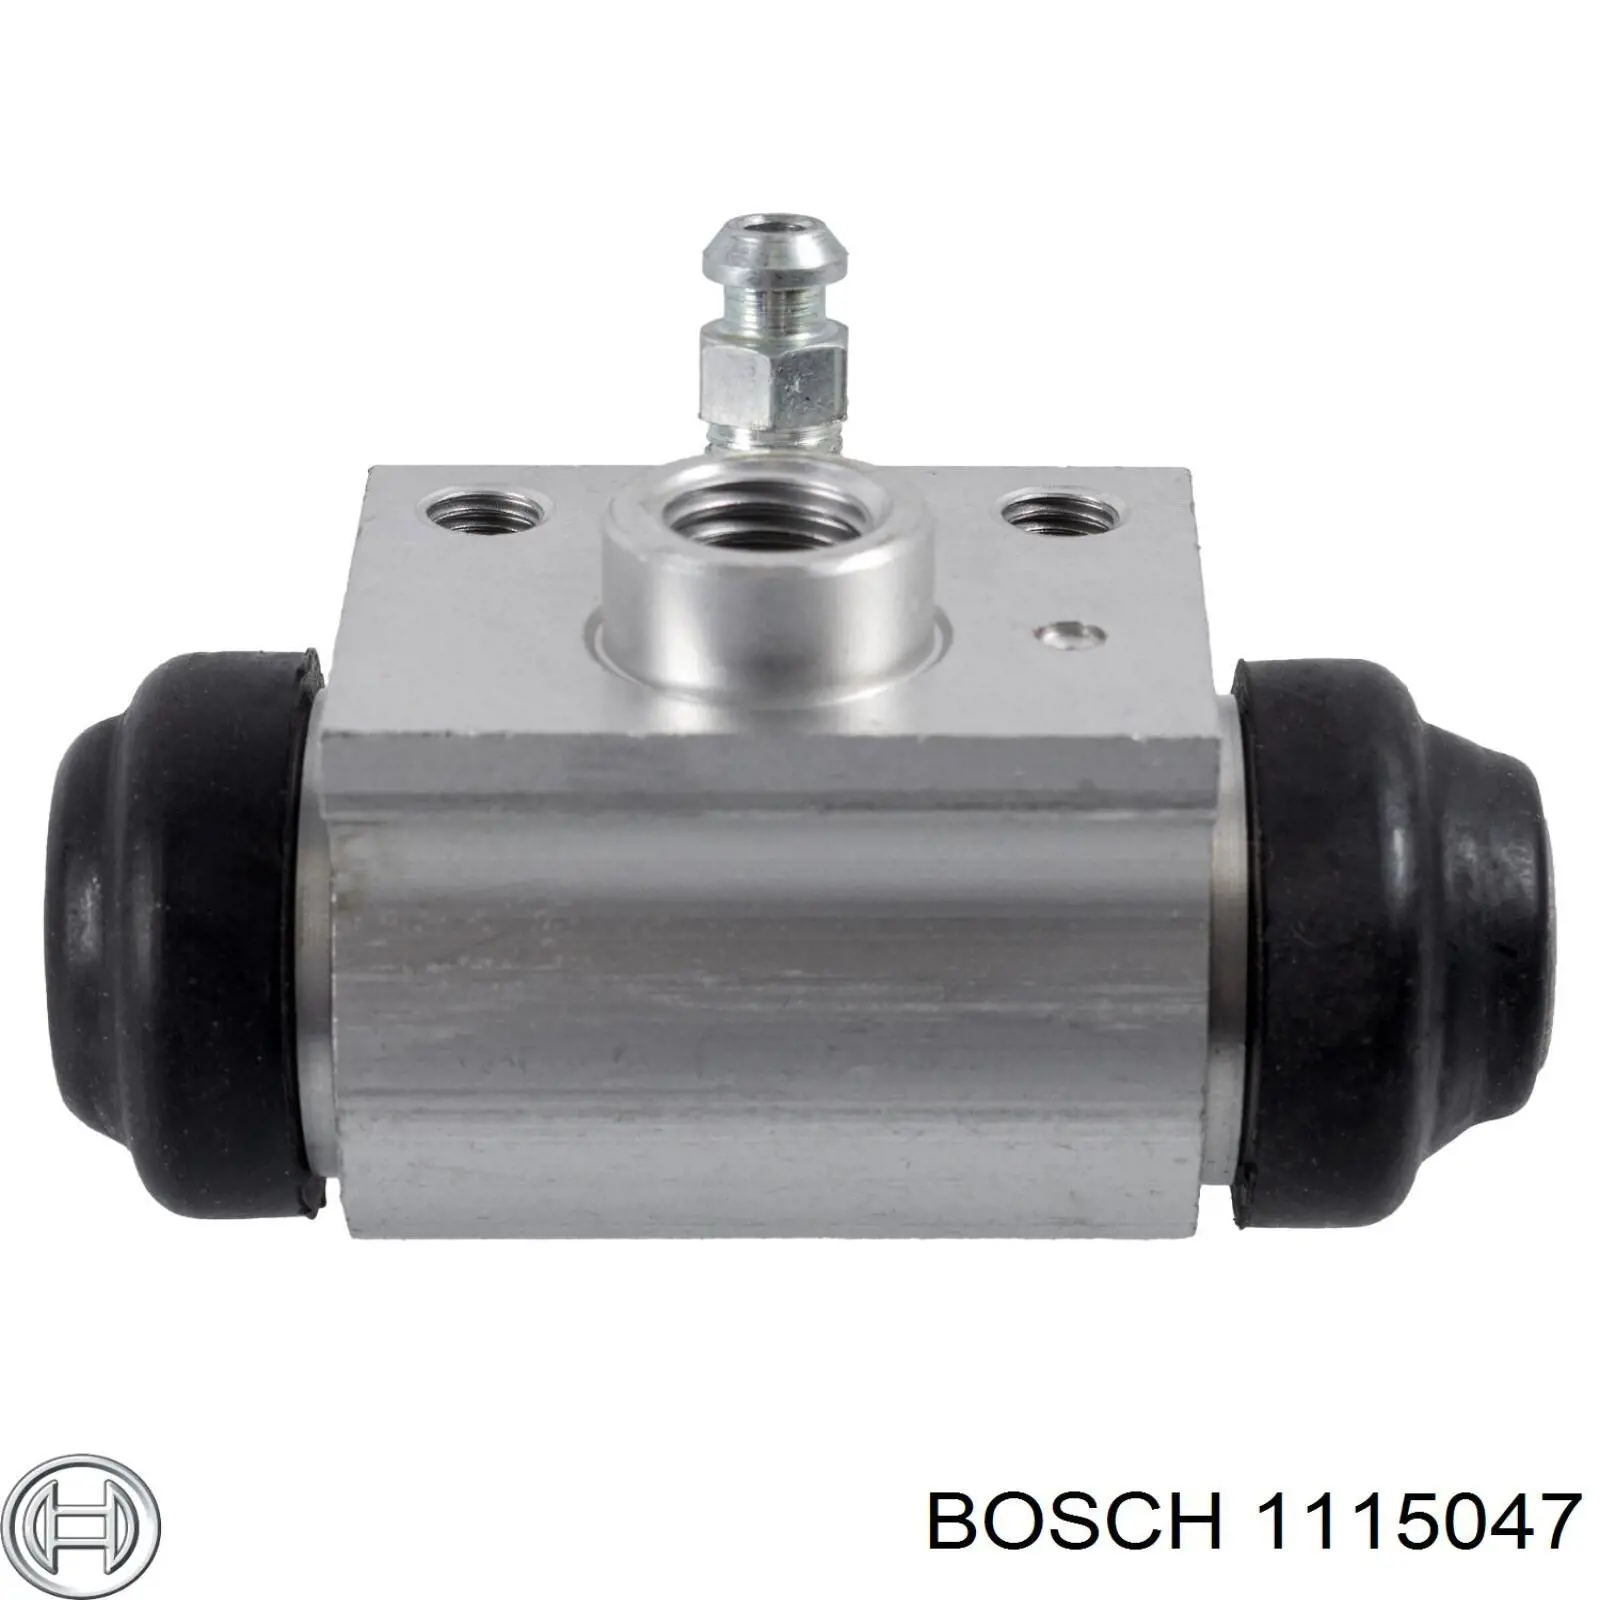 1115047 Bosch motor de arranque